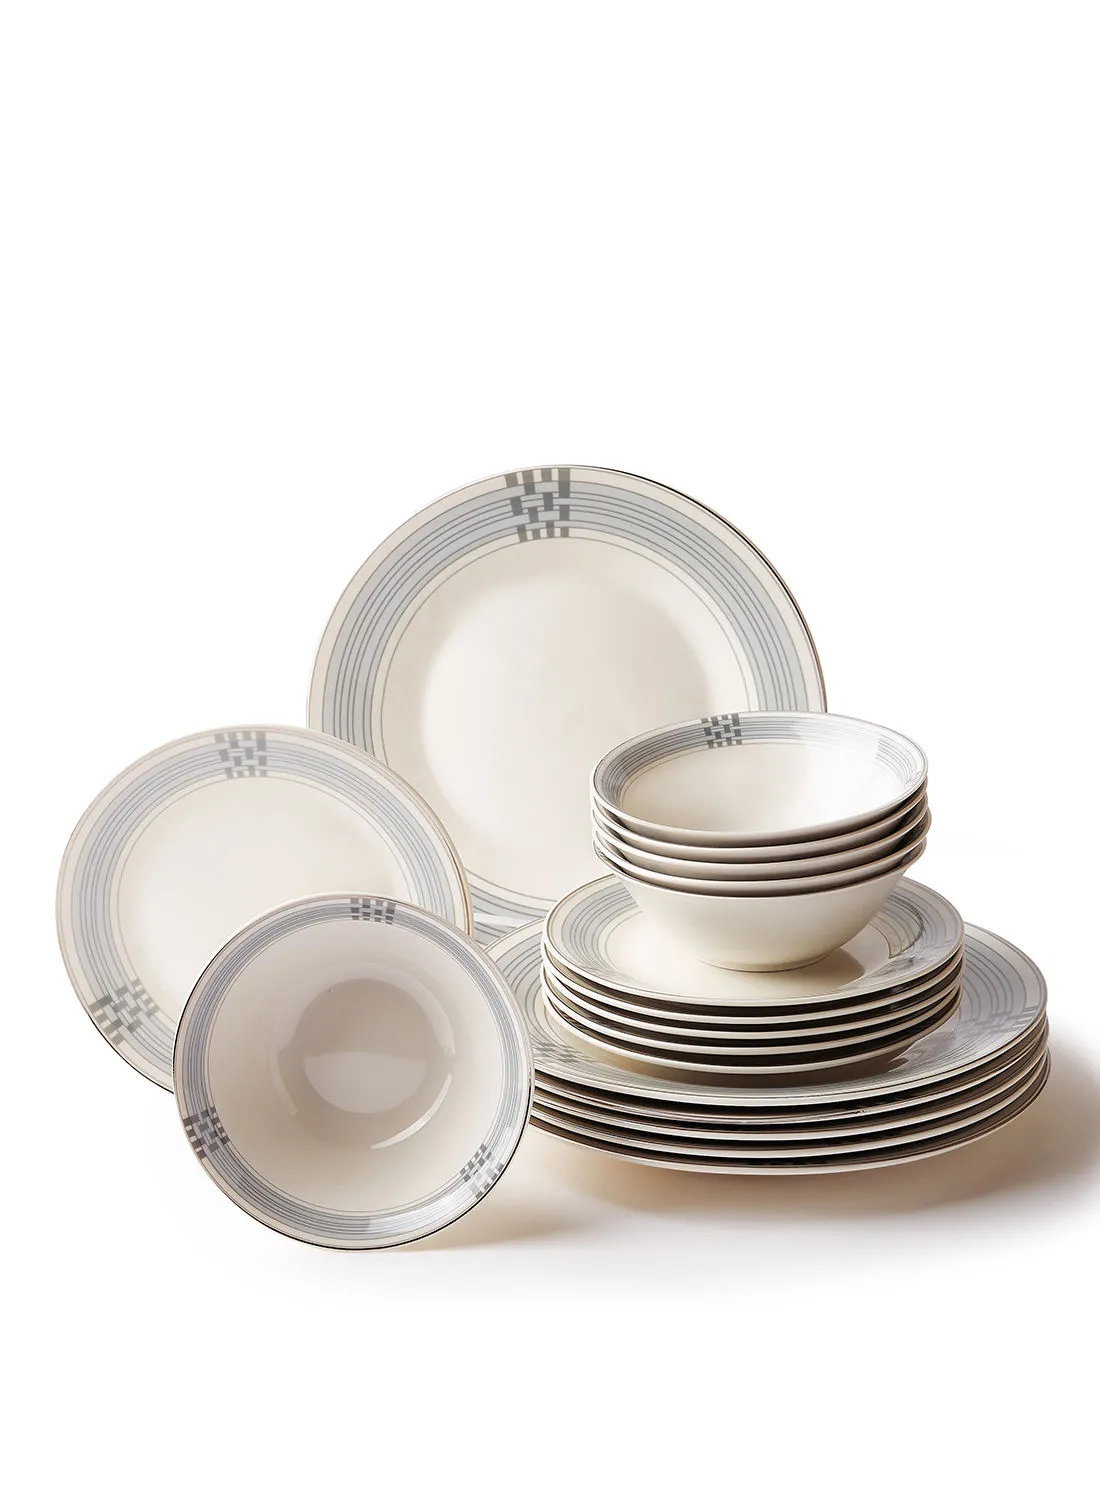 noon east 18 Piece Porcelain Dinner Set - Dishes, Plates - Dinner Plate, Side Plate, Bowl - Serves 6 - Festive Design Orion/Gold